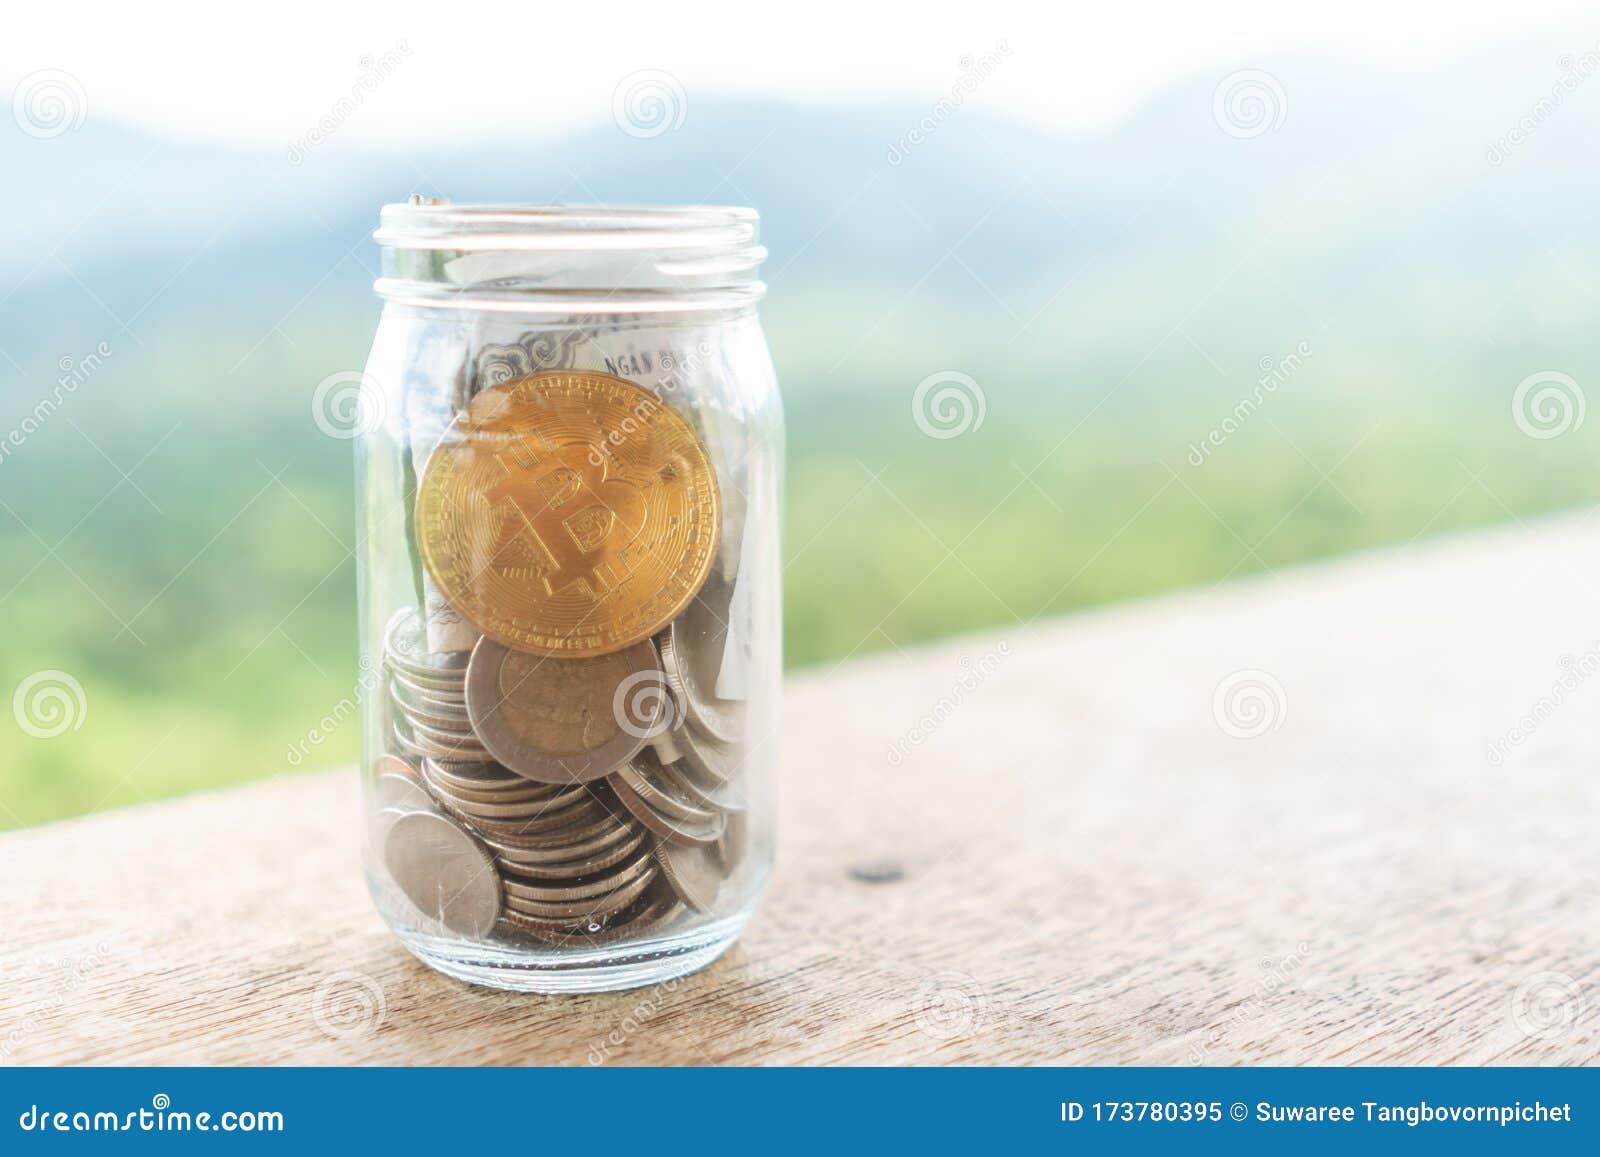 bitcoin jar